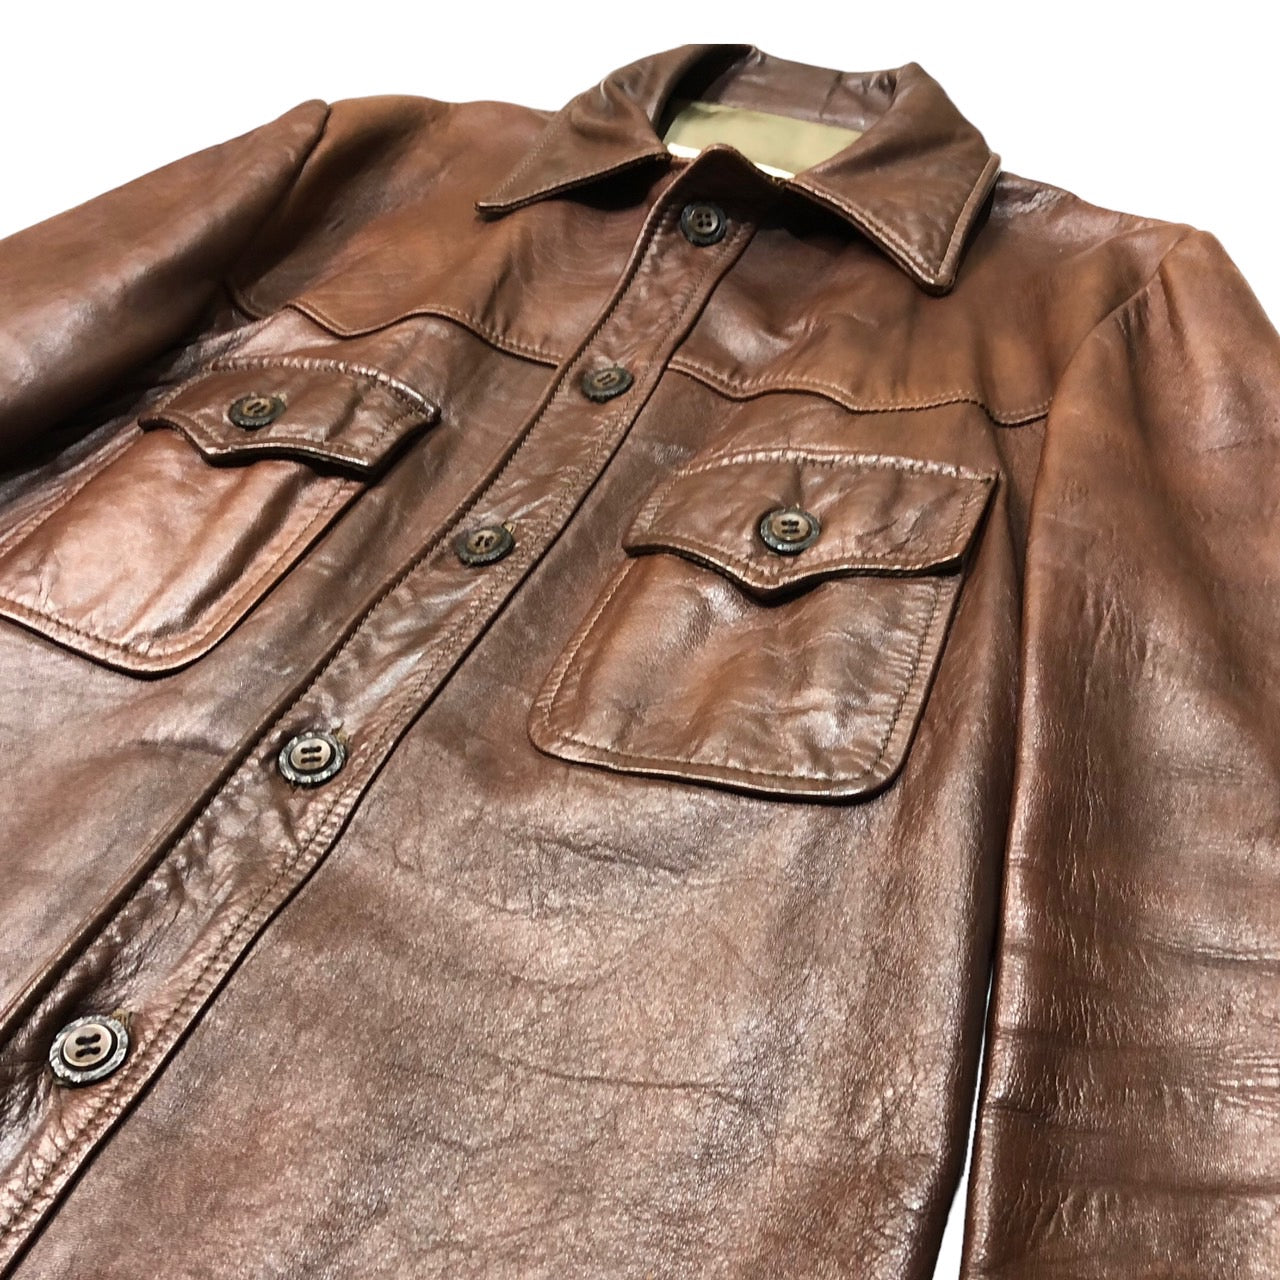 californian(カルフォルニア) 70's ヴィンテージレザーシャツジャケット 42(XL程度) ブラウン 70年代